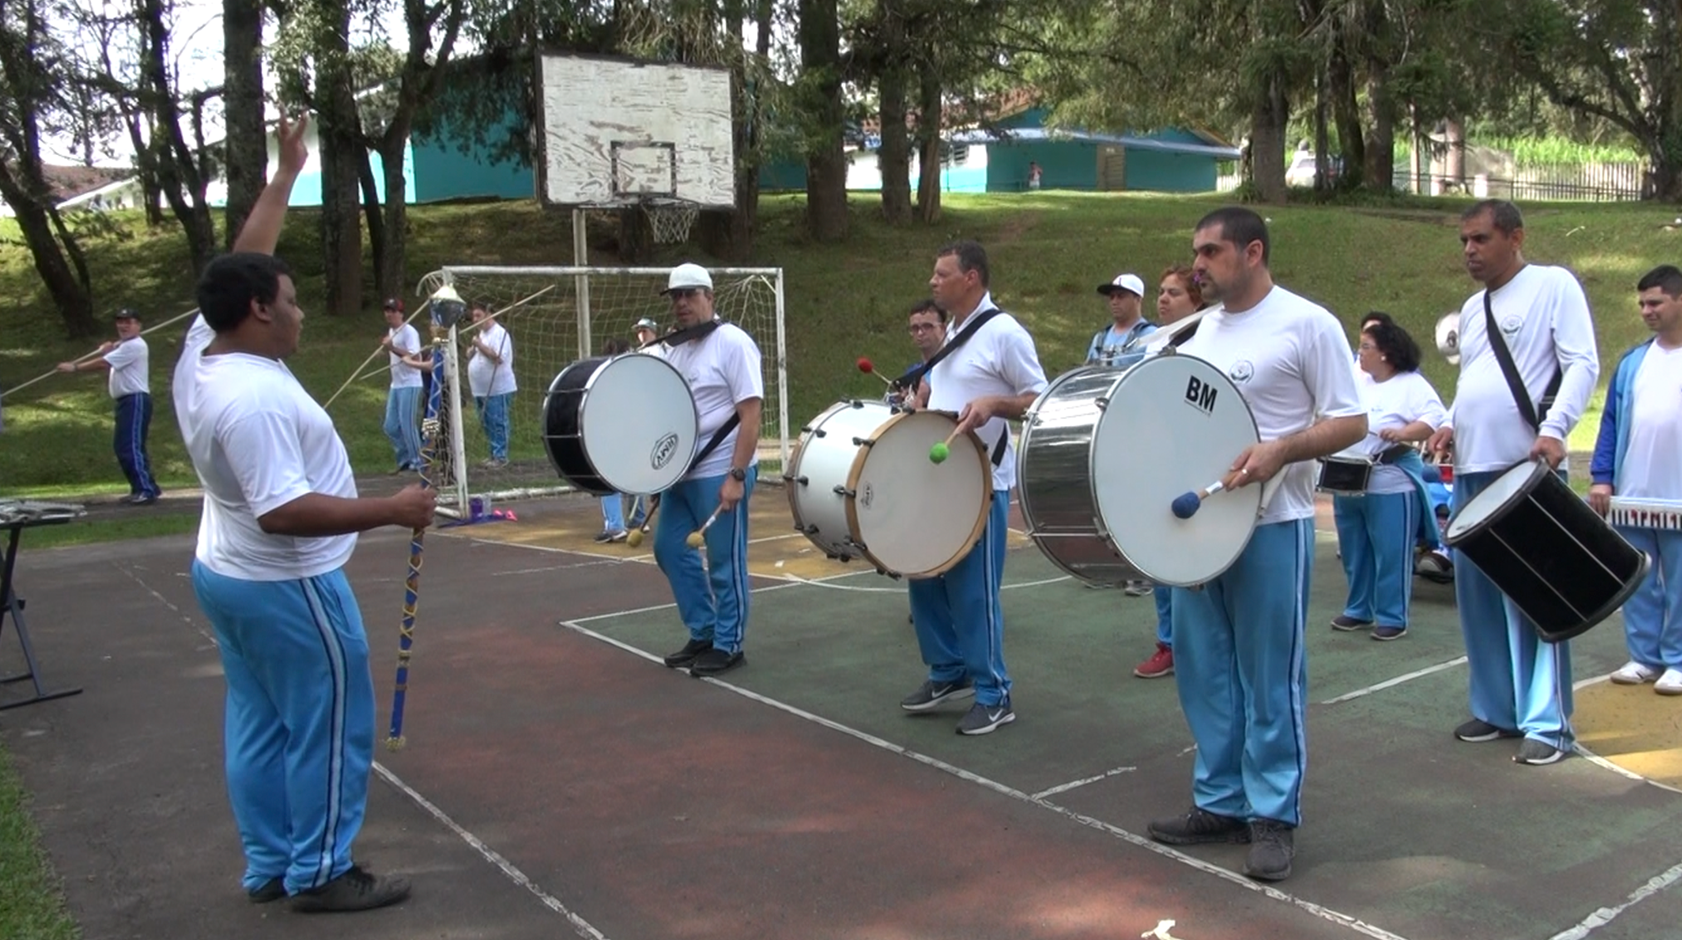 Fanfarra da Apae: Alunos estão reunidos na quadra de esportes de uma escola da Apae. Todos enfileirados com instrumentos na mão.